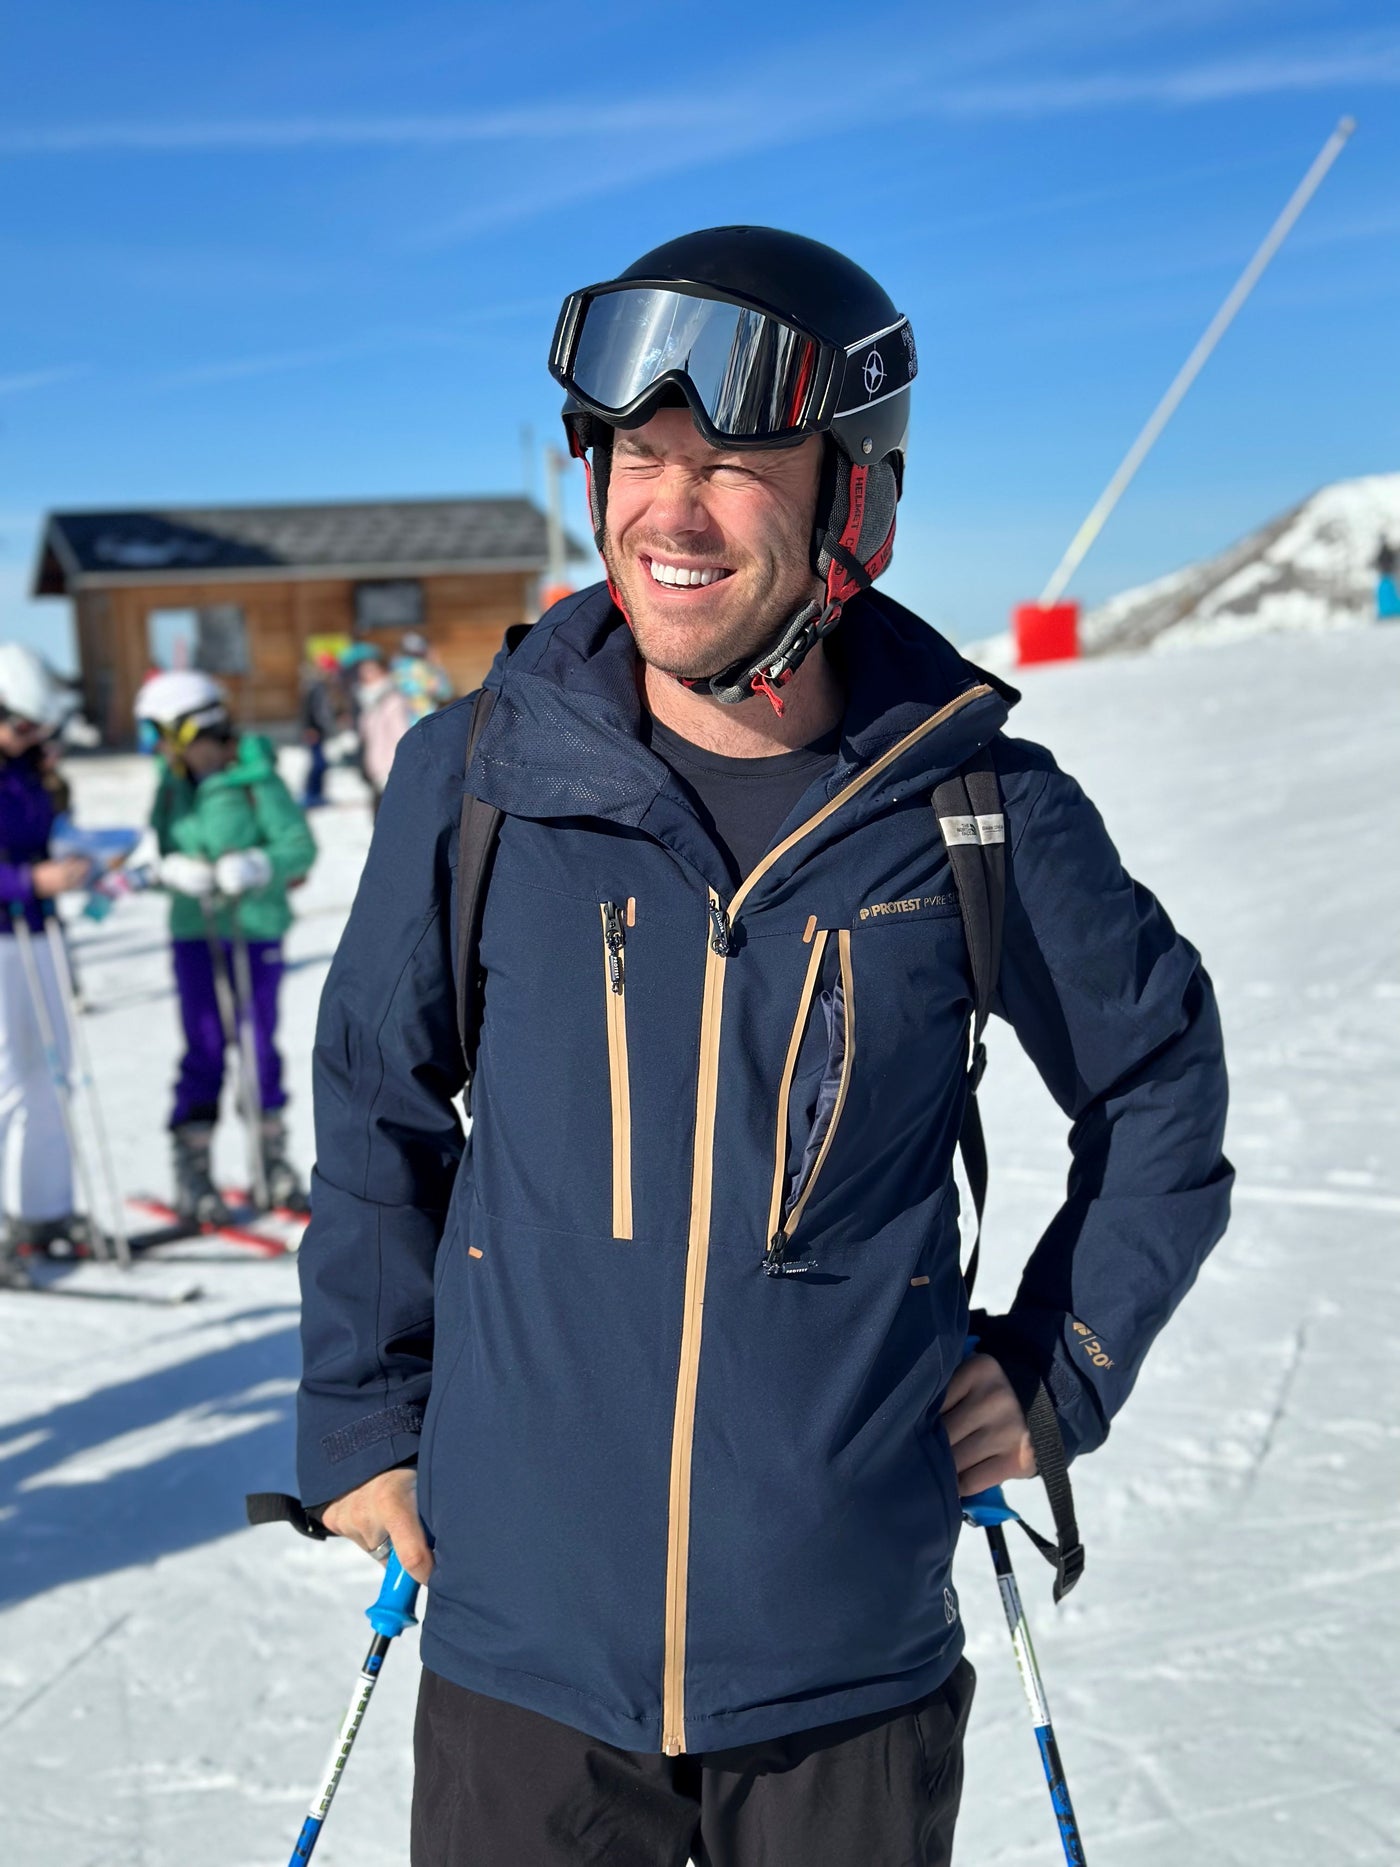 Mens Adult Ski Jacket Hire